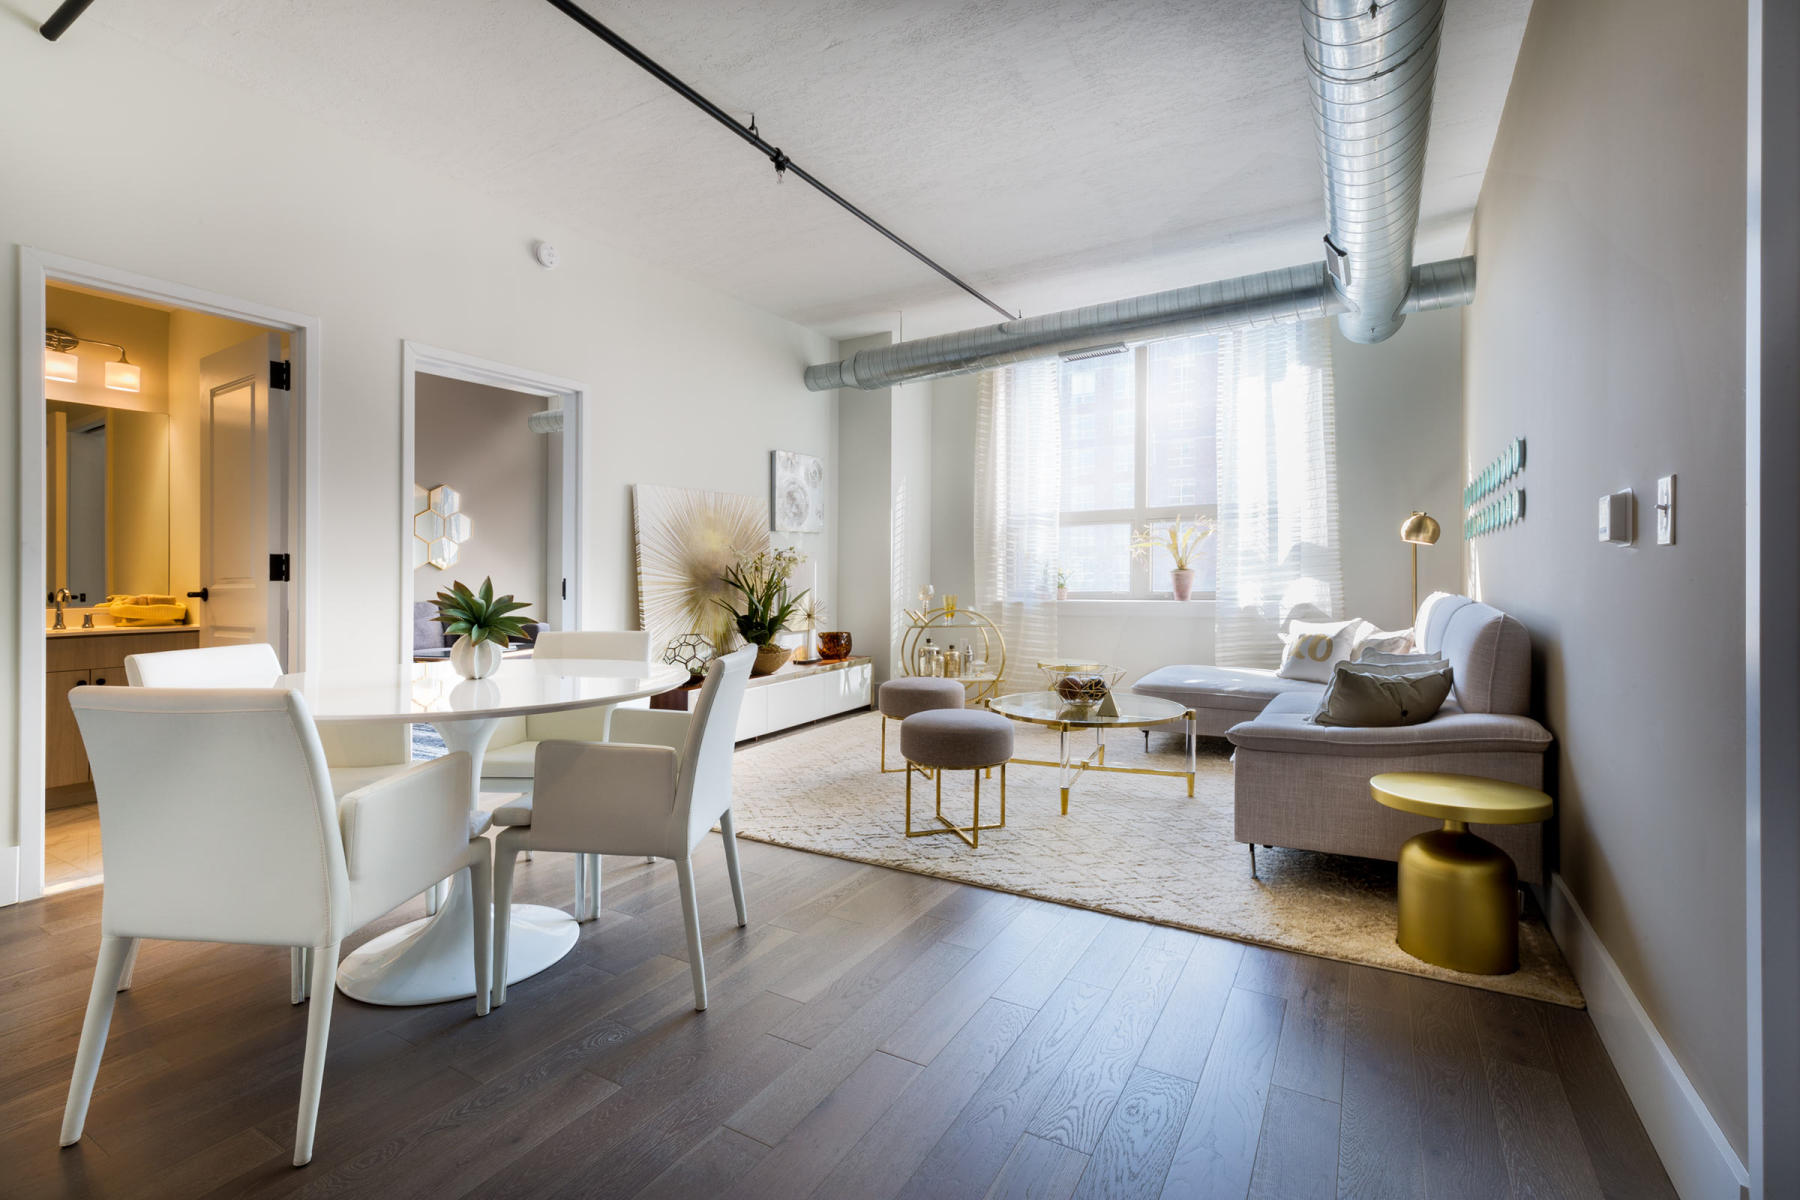 Soho Lofts - spacious apartments. : Soho Lofts : New York NY Architectural Photographer | Interior and Exterior